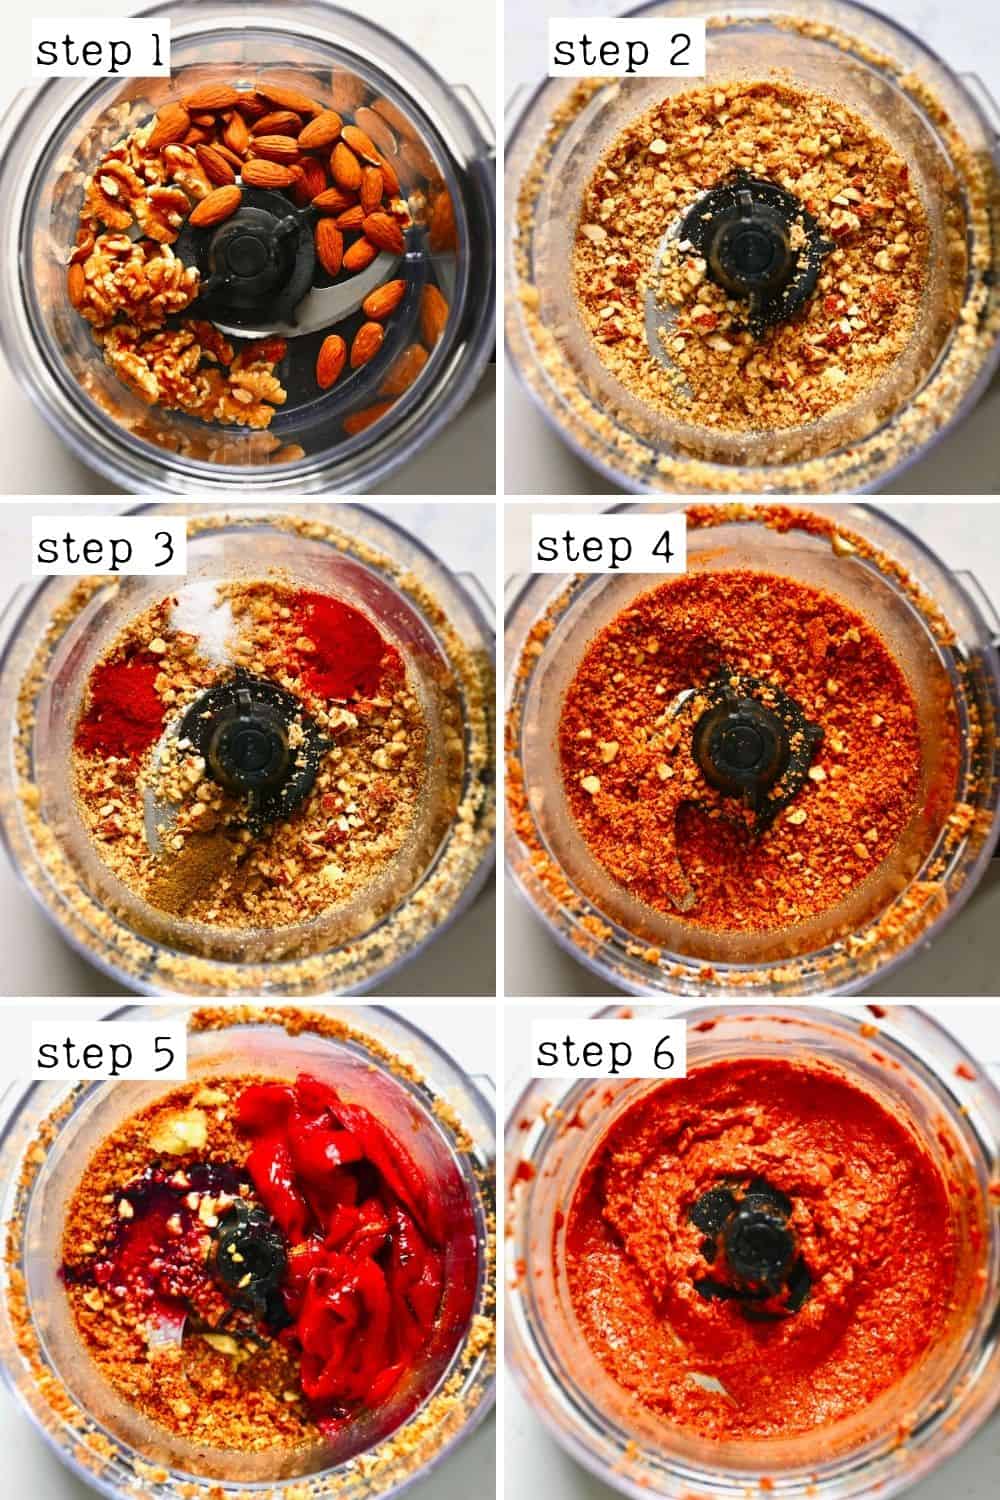 Steps for blending muhammara dip